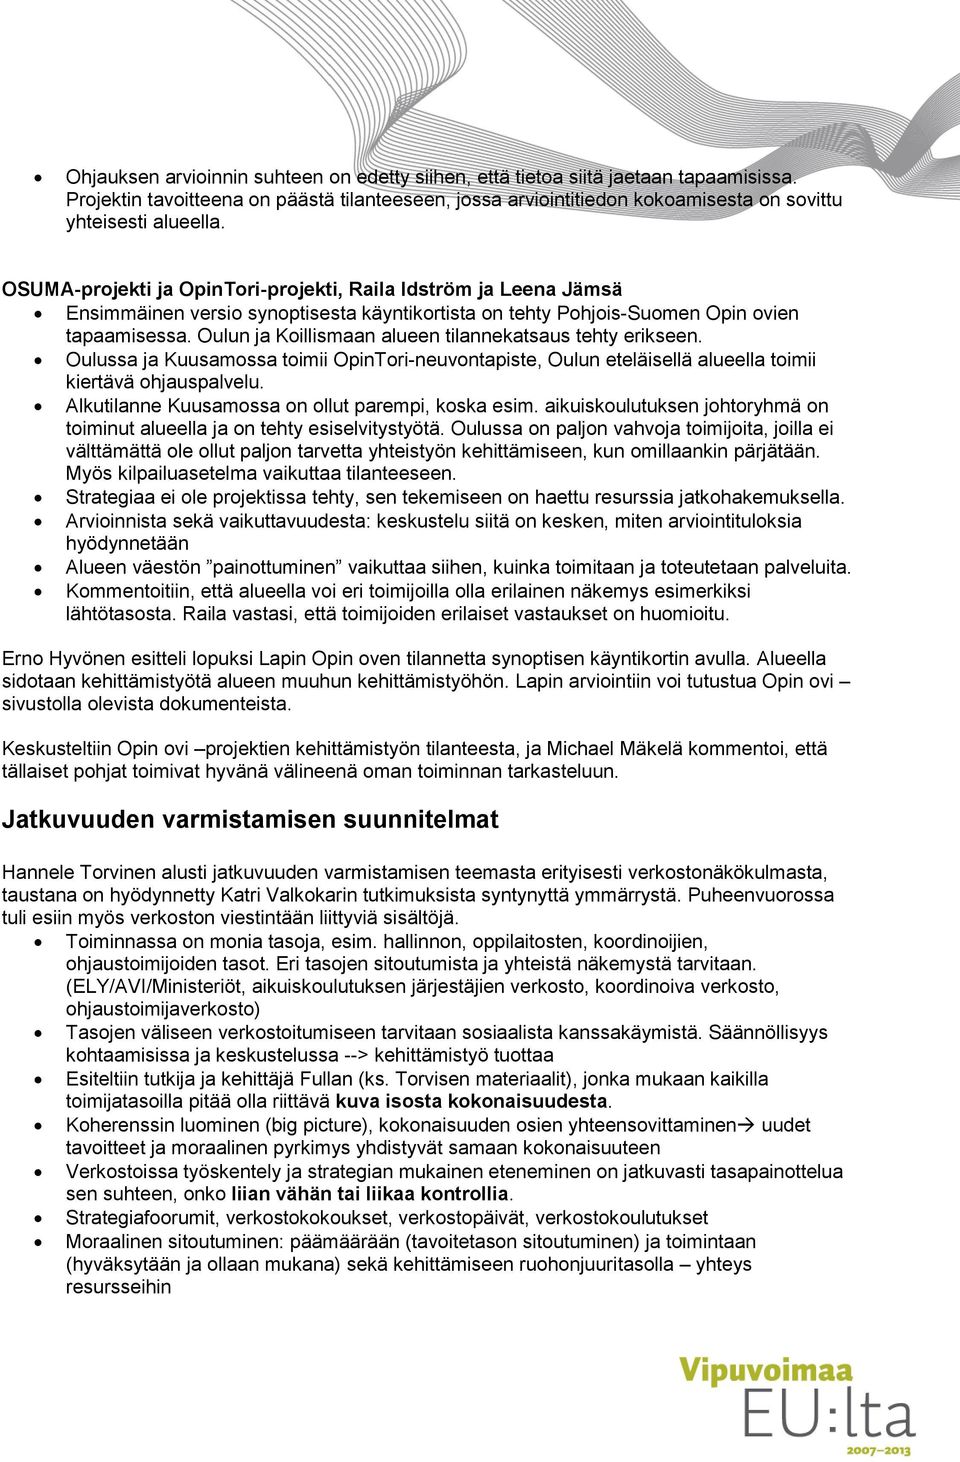 Oulun ja Koillismaan alueen tilannekatsaus tehty erikseen. Oulussa ja Kuusamossa toimii OpinTori-neuvontapiste, Oulun eteläisellä alueella toimii kiertävä ohjauspalvelu.